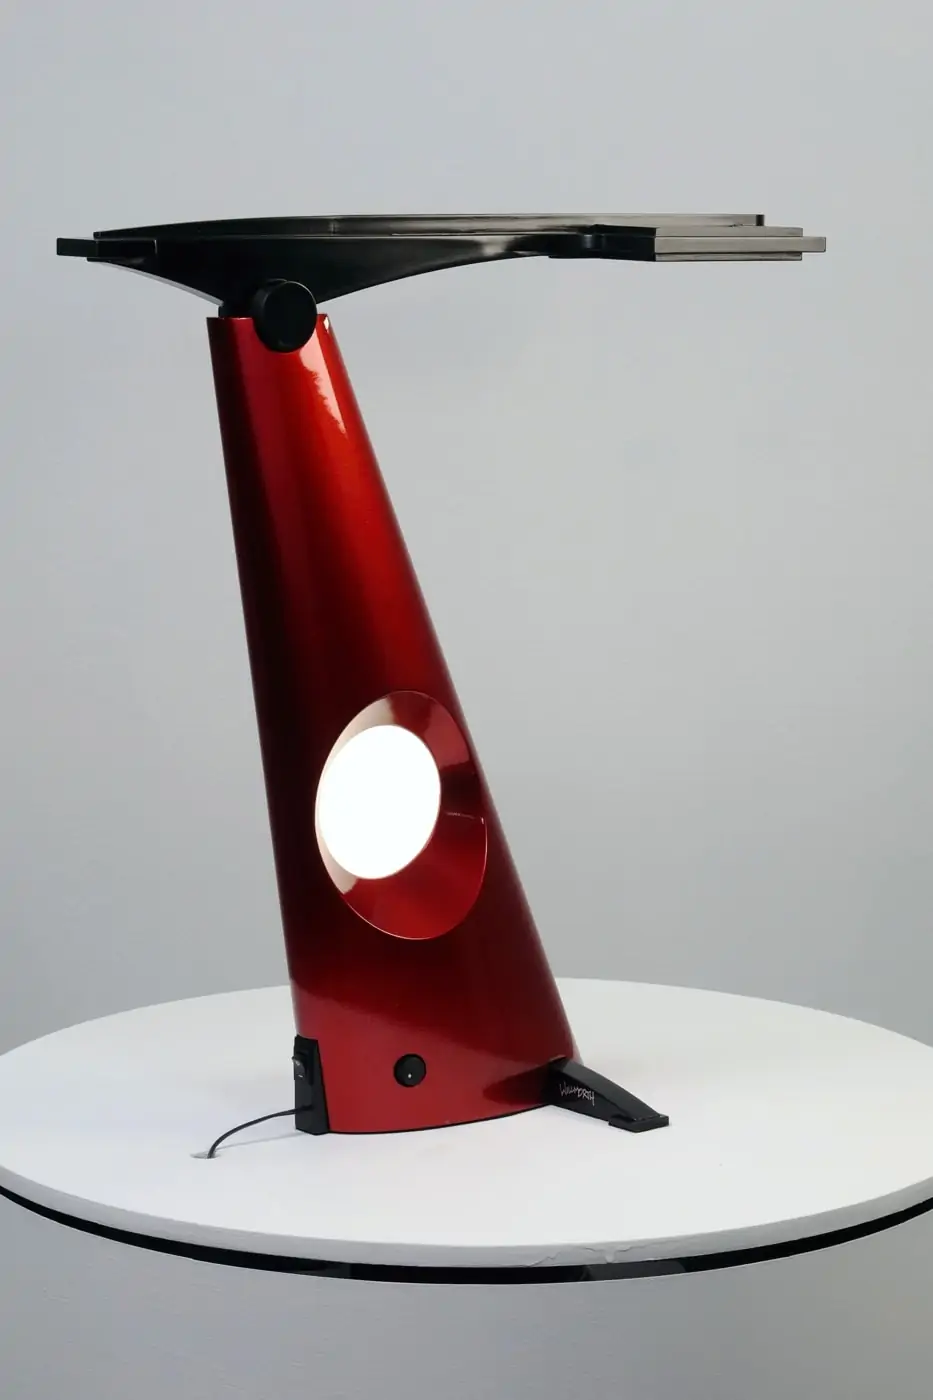 Unicycle2 OLED fixture, Lumenique